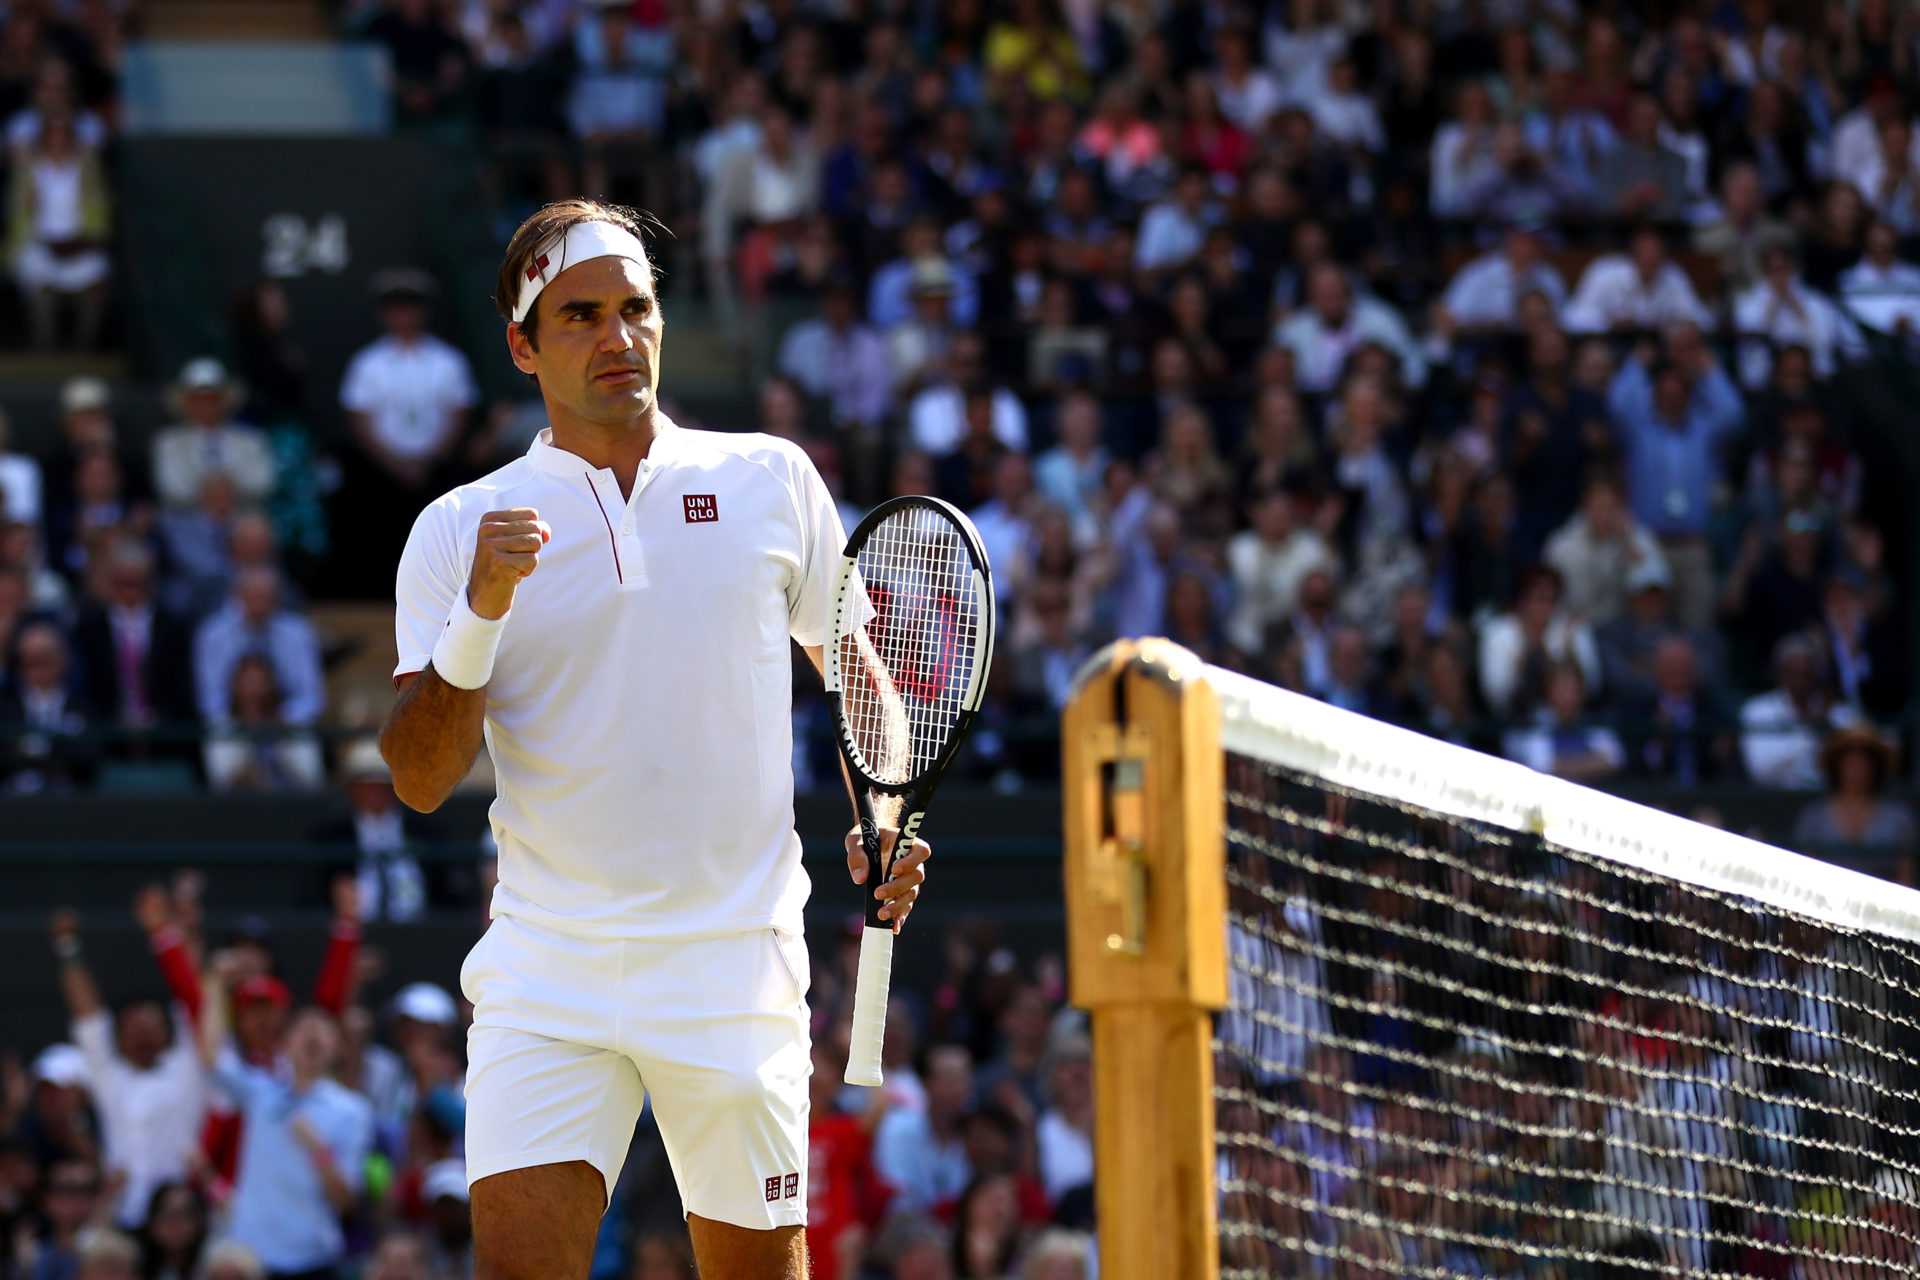 Wimbledon 2021 est-il la dernière chance pour Roger Federer de remporter un chelem?